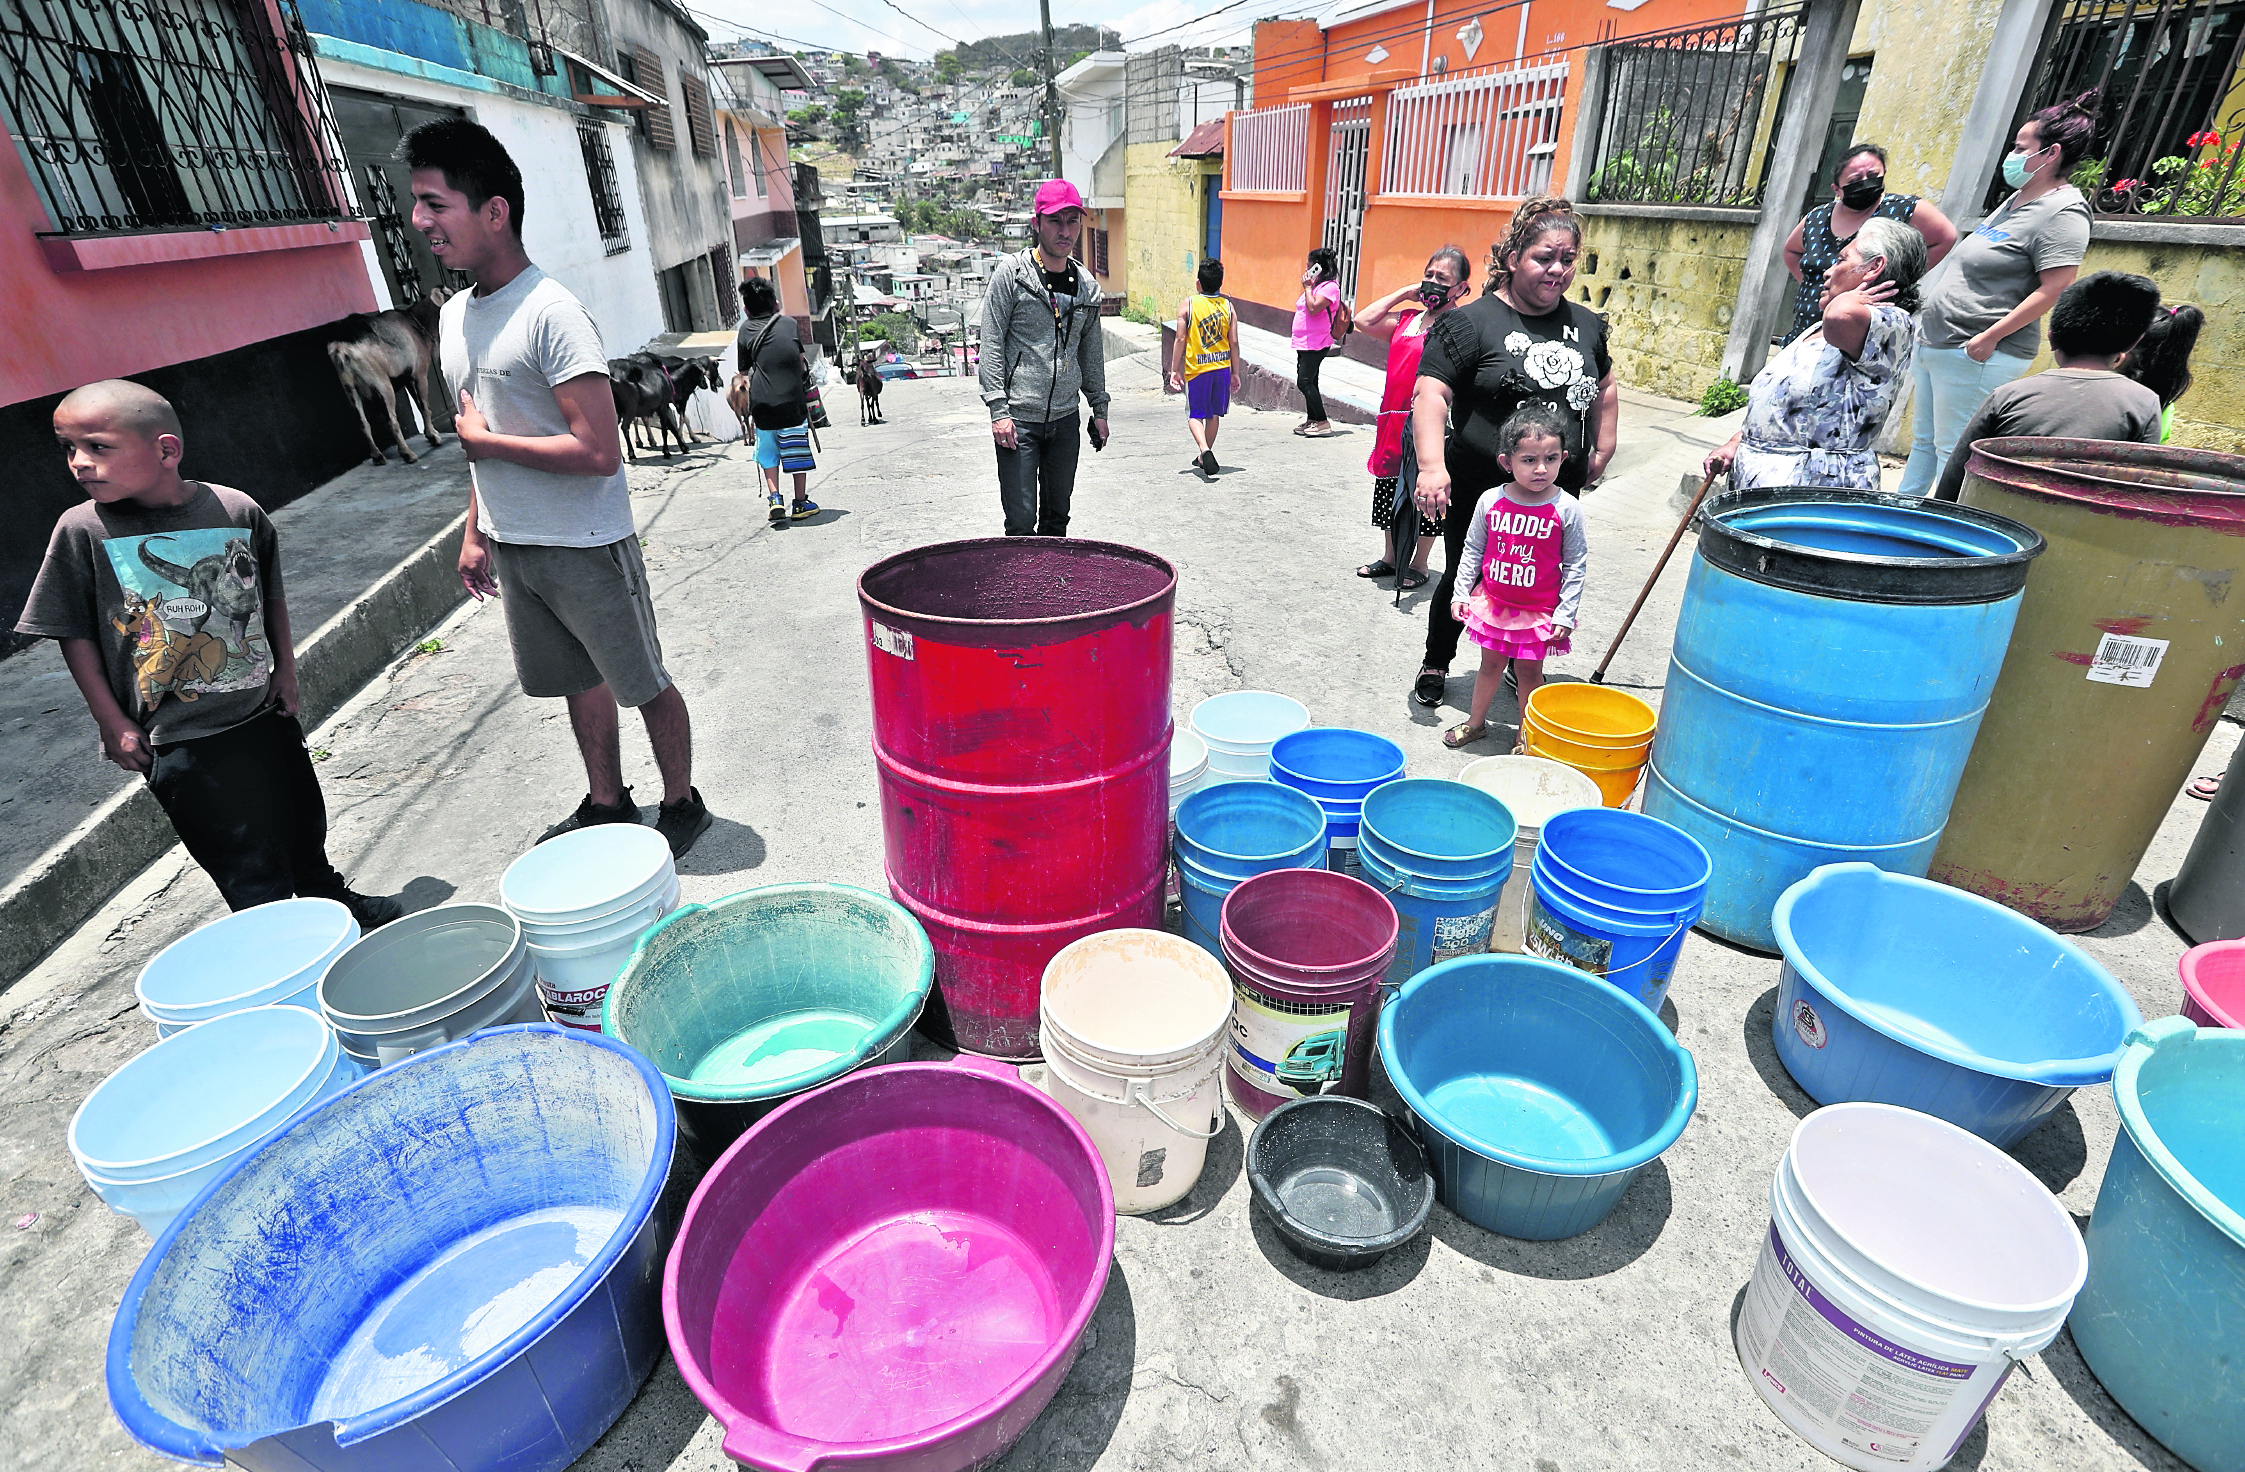 Ante la escasez, algunos vecinos buscan diversos mecanismos para proveerse de agua. (Foto Prensa Libre: Erick Ávila)